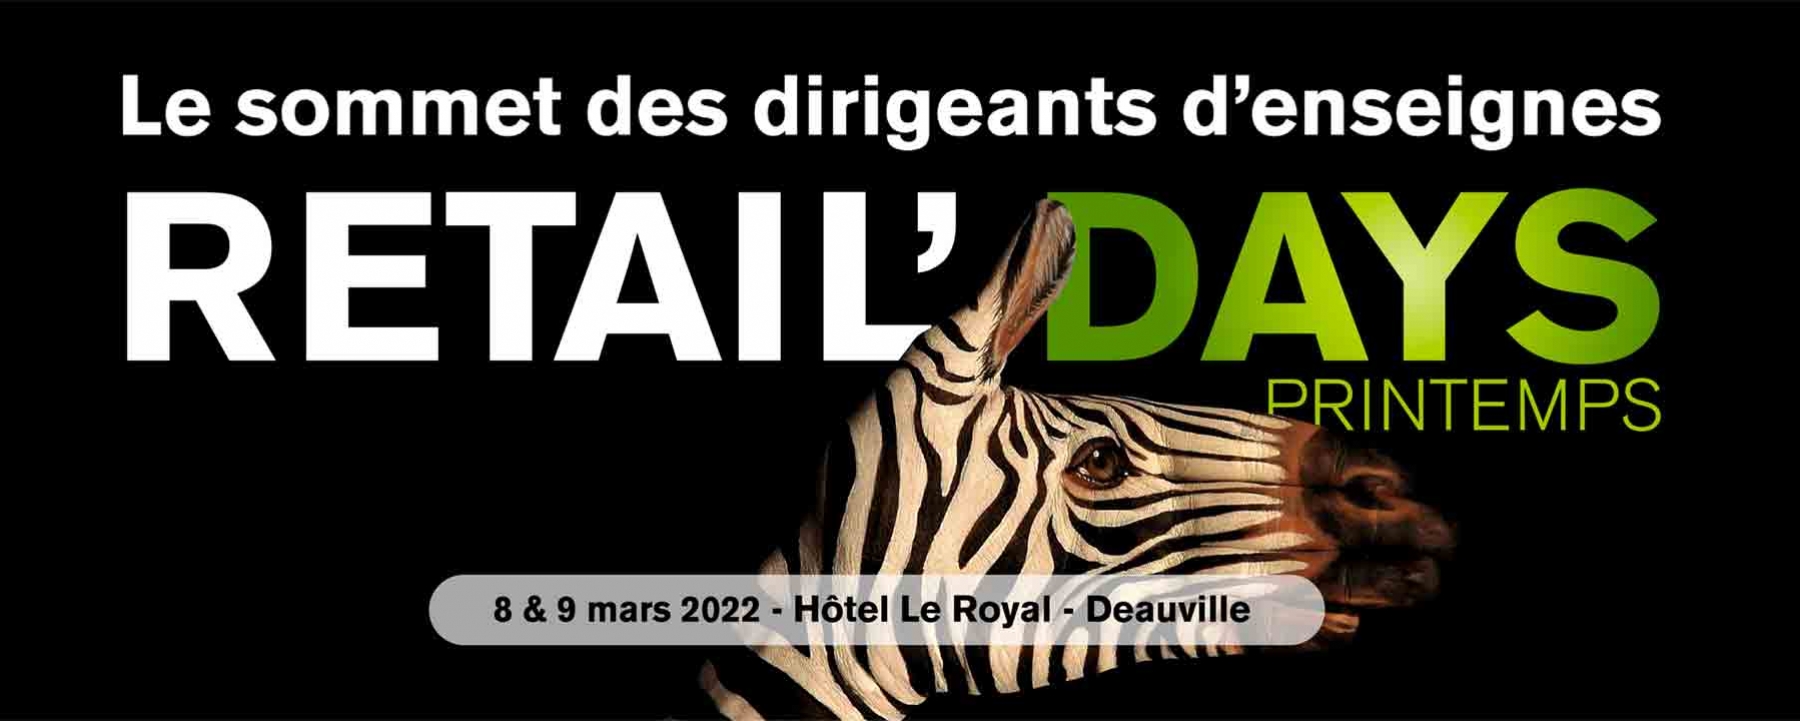 iSendPro Telecom sera présent au Retail Days les 8 & 9 mars prochain à Deauville